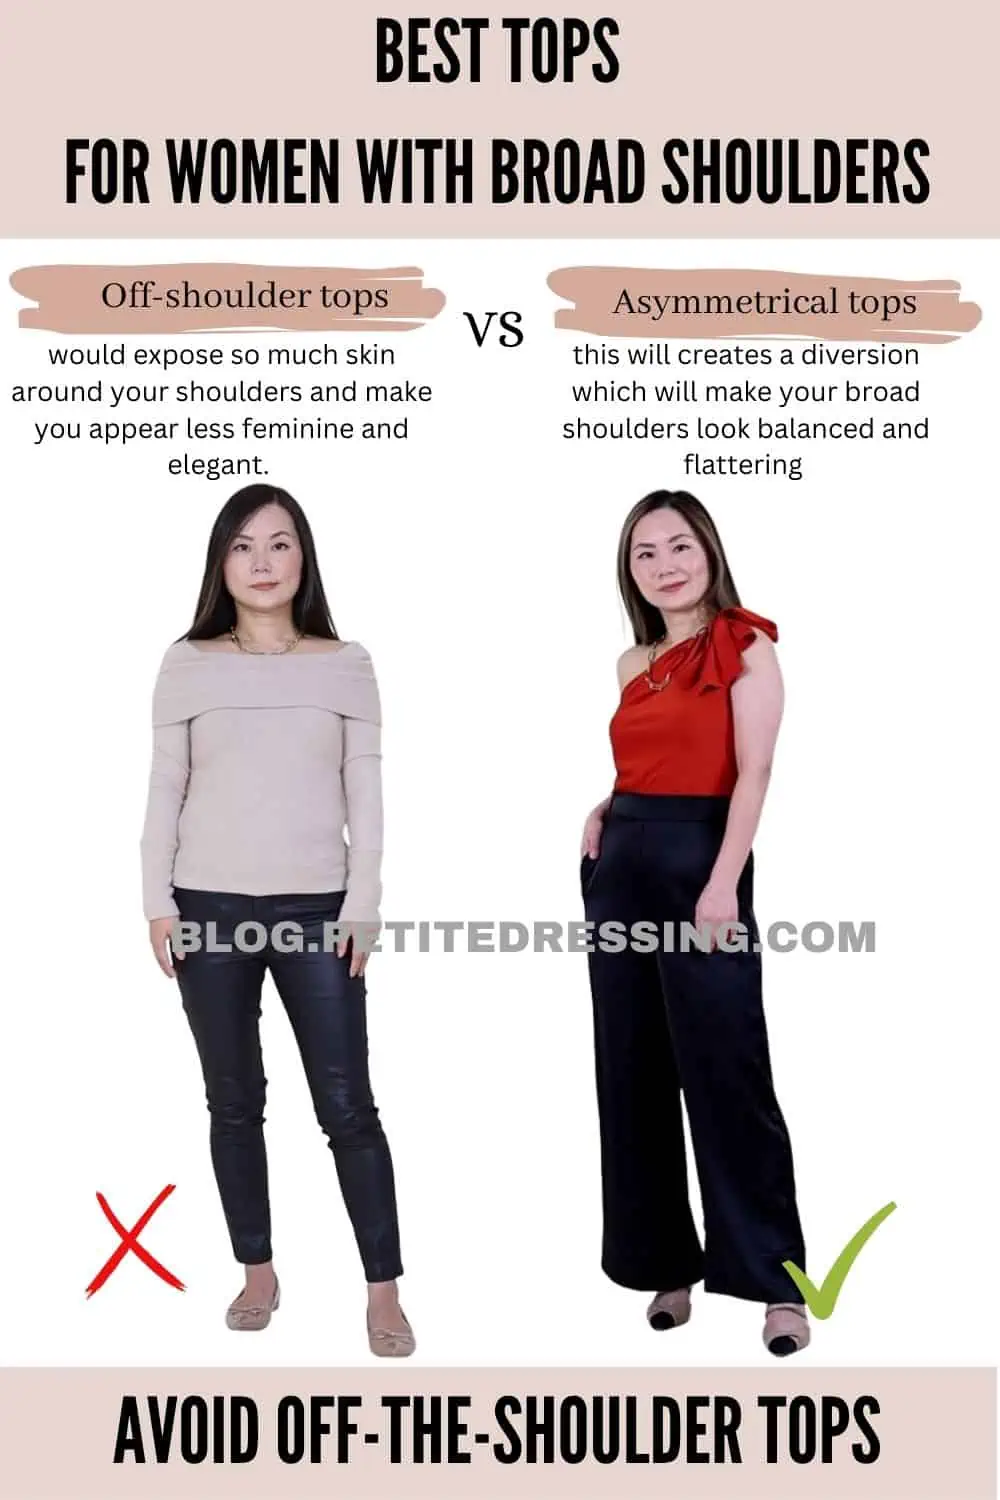 Broad shoulder make it hard to wear cute tank tops or cute tops in gen, broad  shoulders